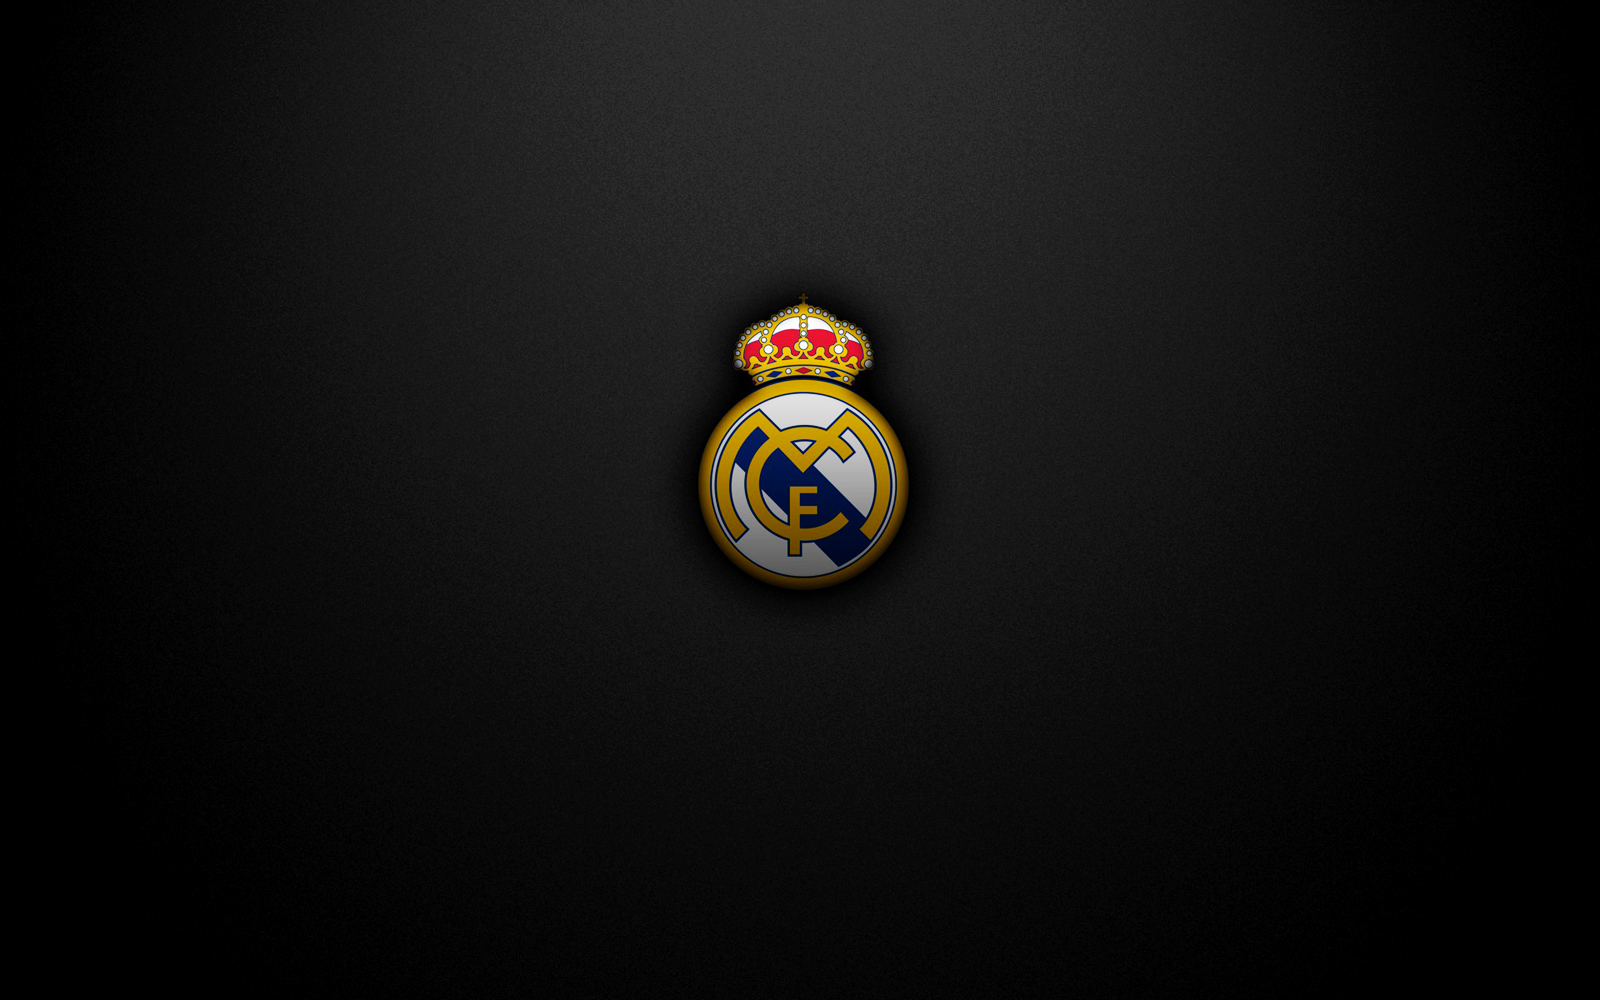 50+] Real Madrid Wallpapers for Desktop - WallpaperSafari